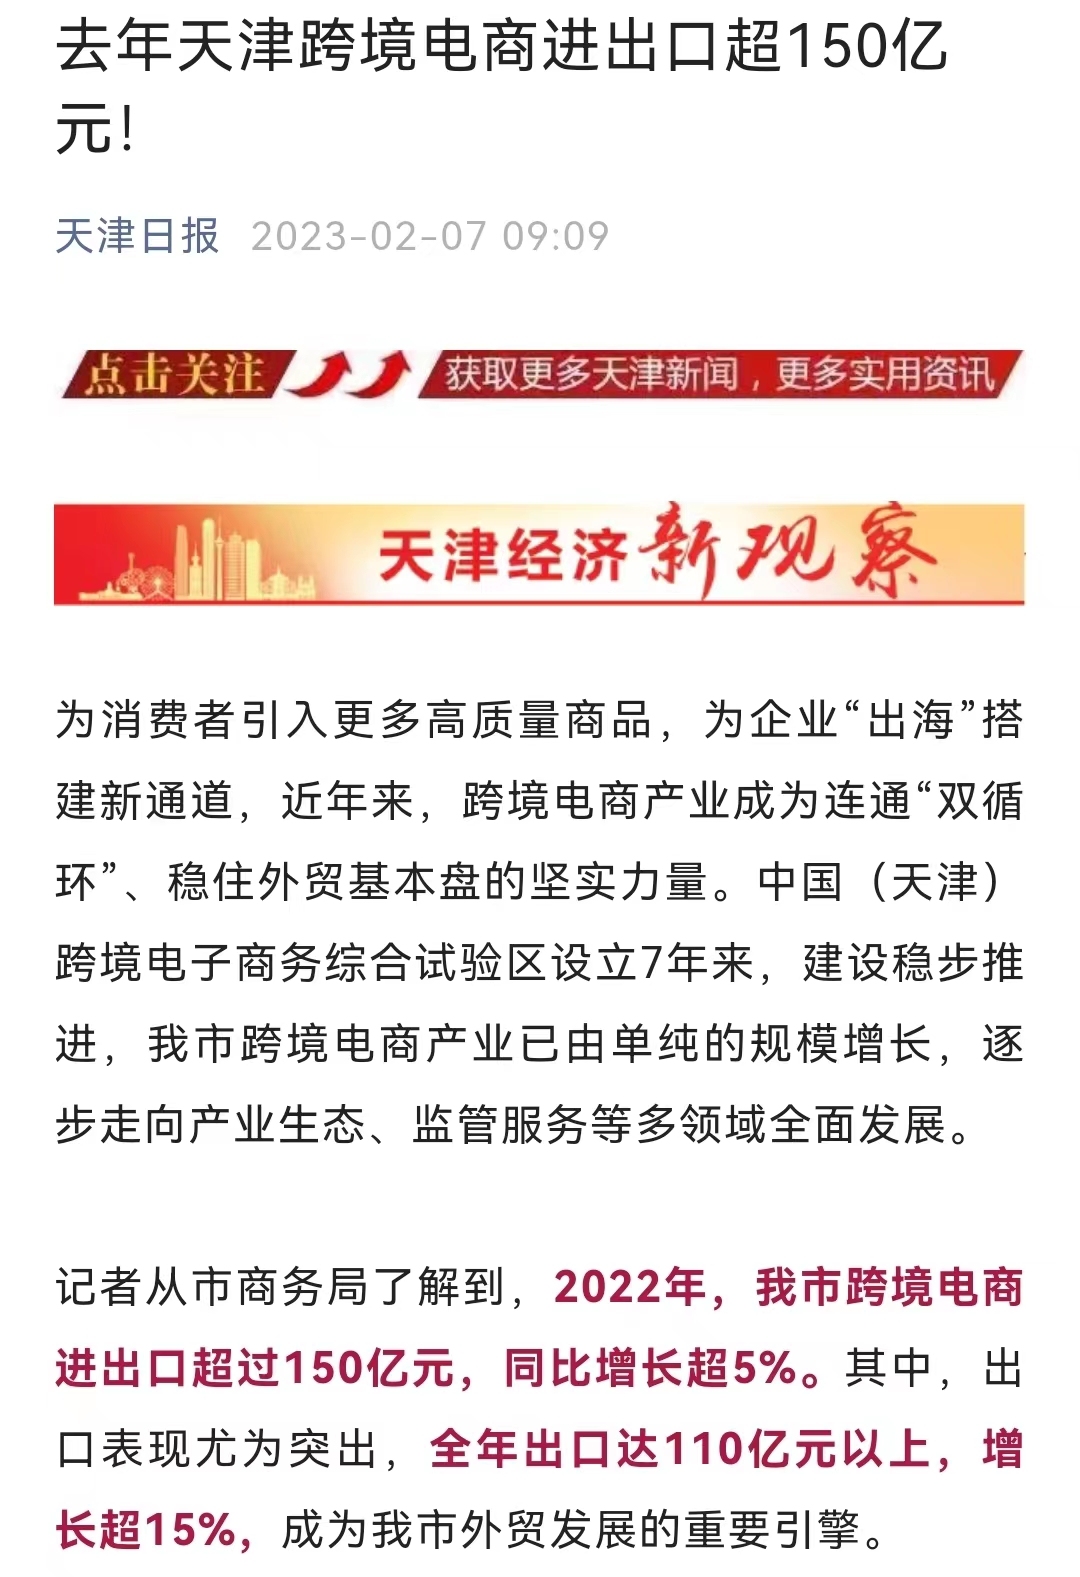 2022年天津跨境电商进出口超150亿元